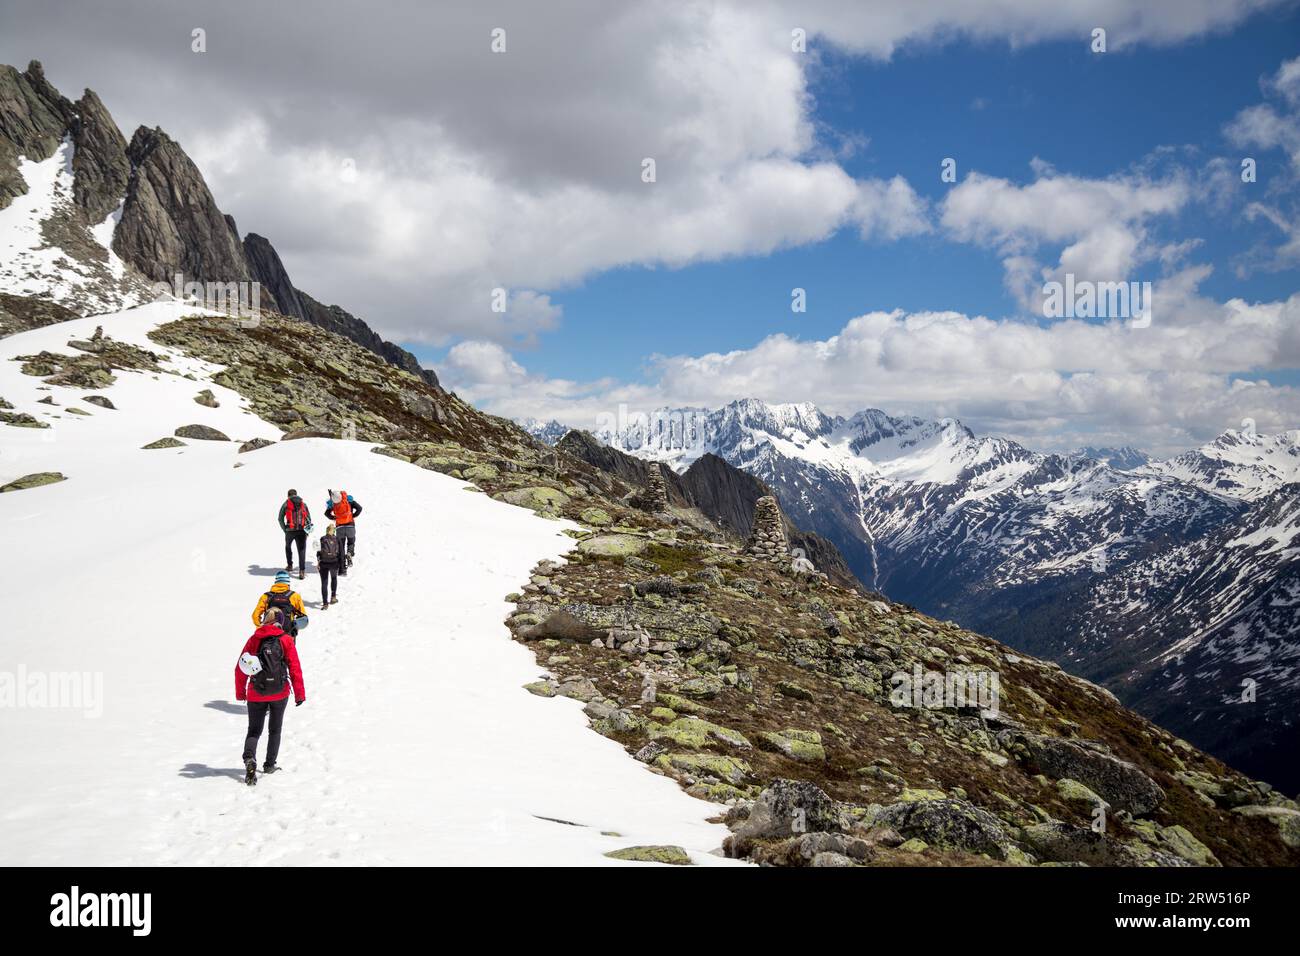 Goscheneralp, Suisse, 24 mai 2014 : groupe de personnes qui font de la randonnée dans la neige dans les Alpes suisses Banque D'Images